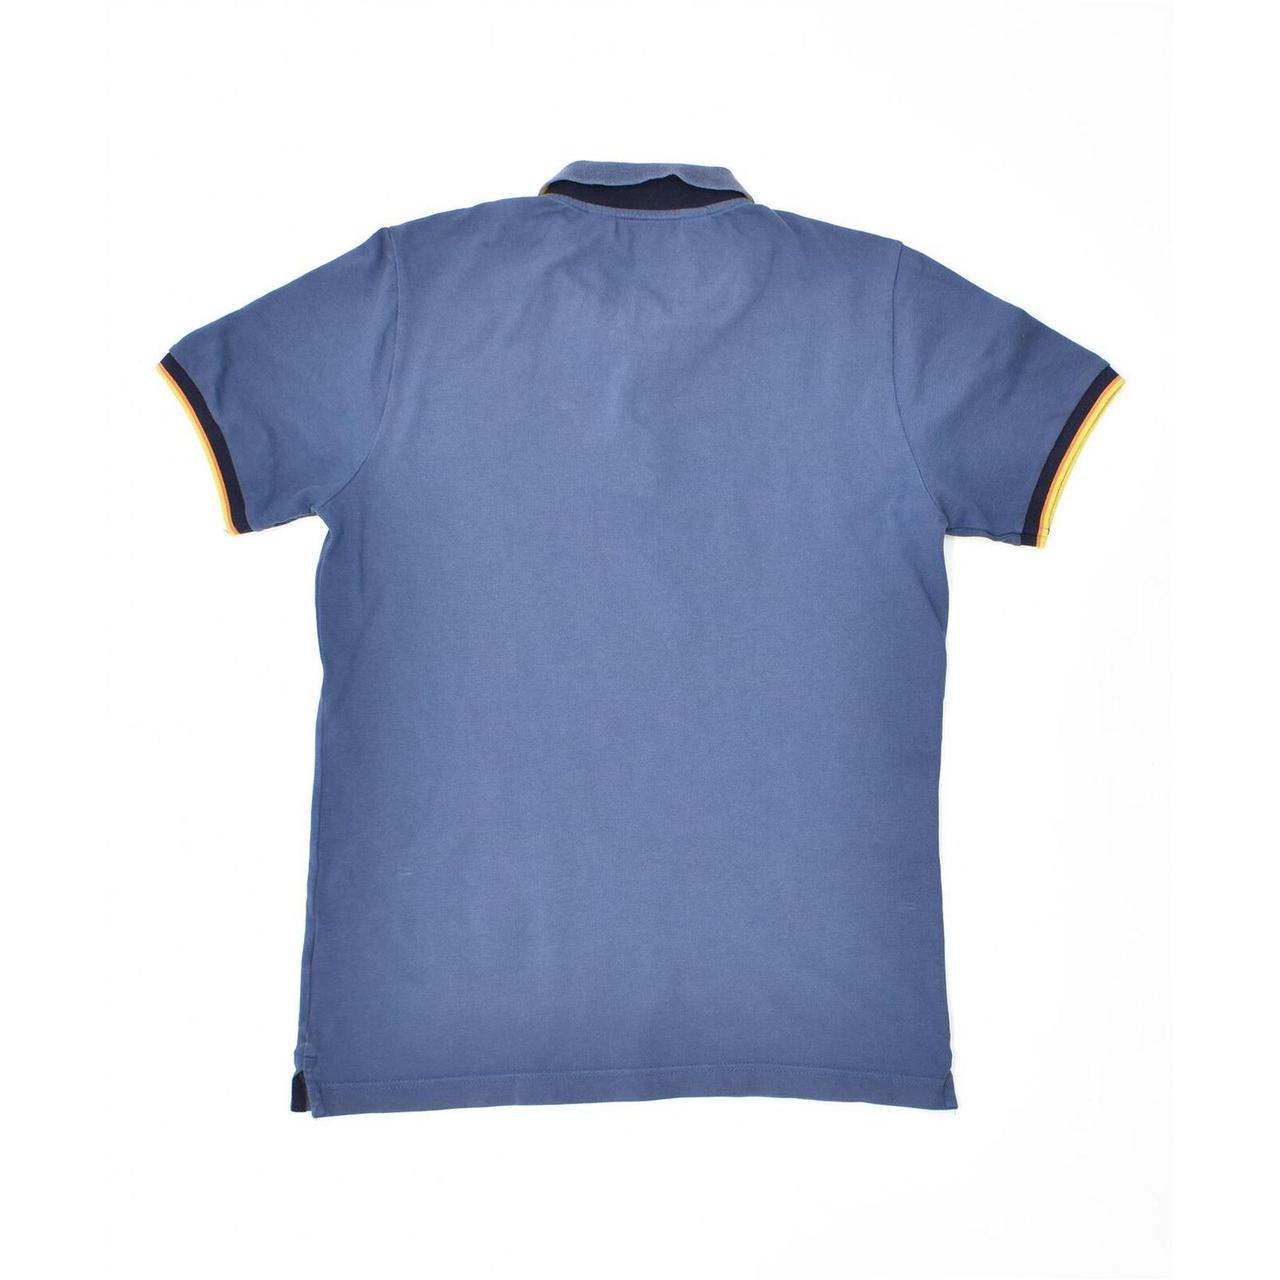 Product Image 2 - K-WAY Mens Polo Shirt Medium